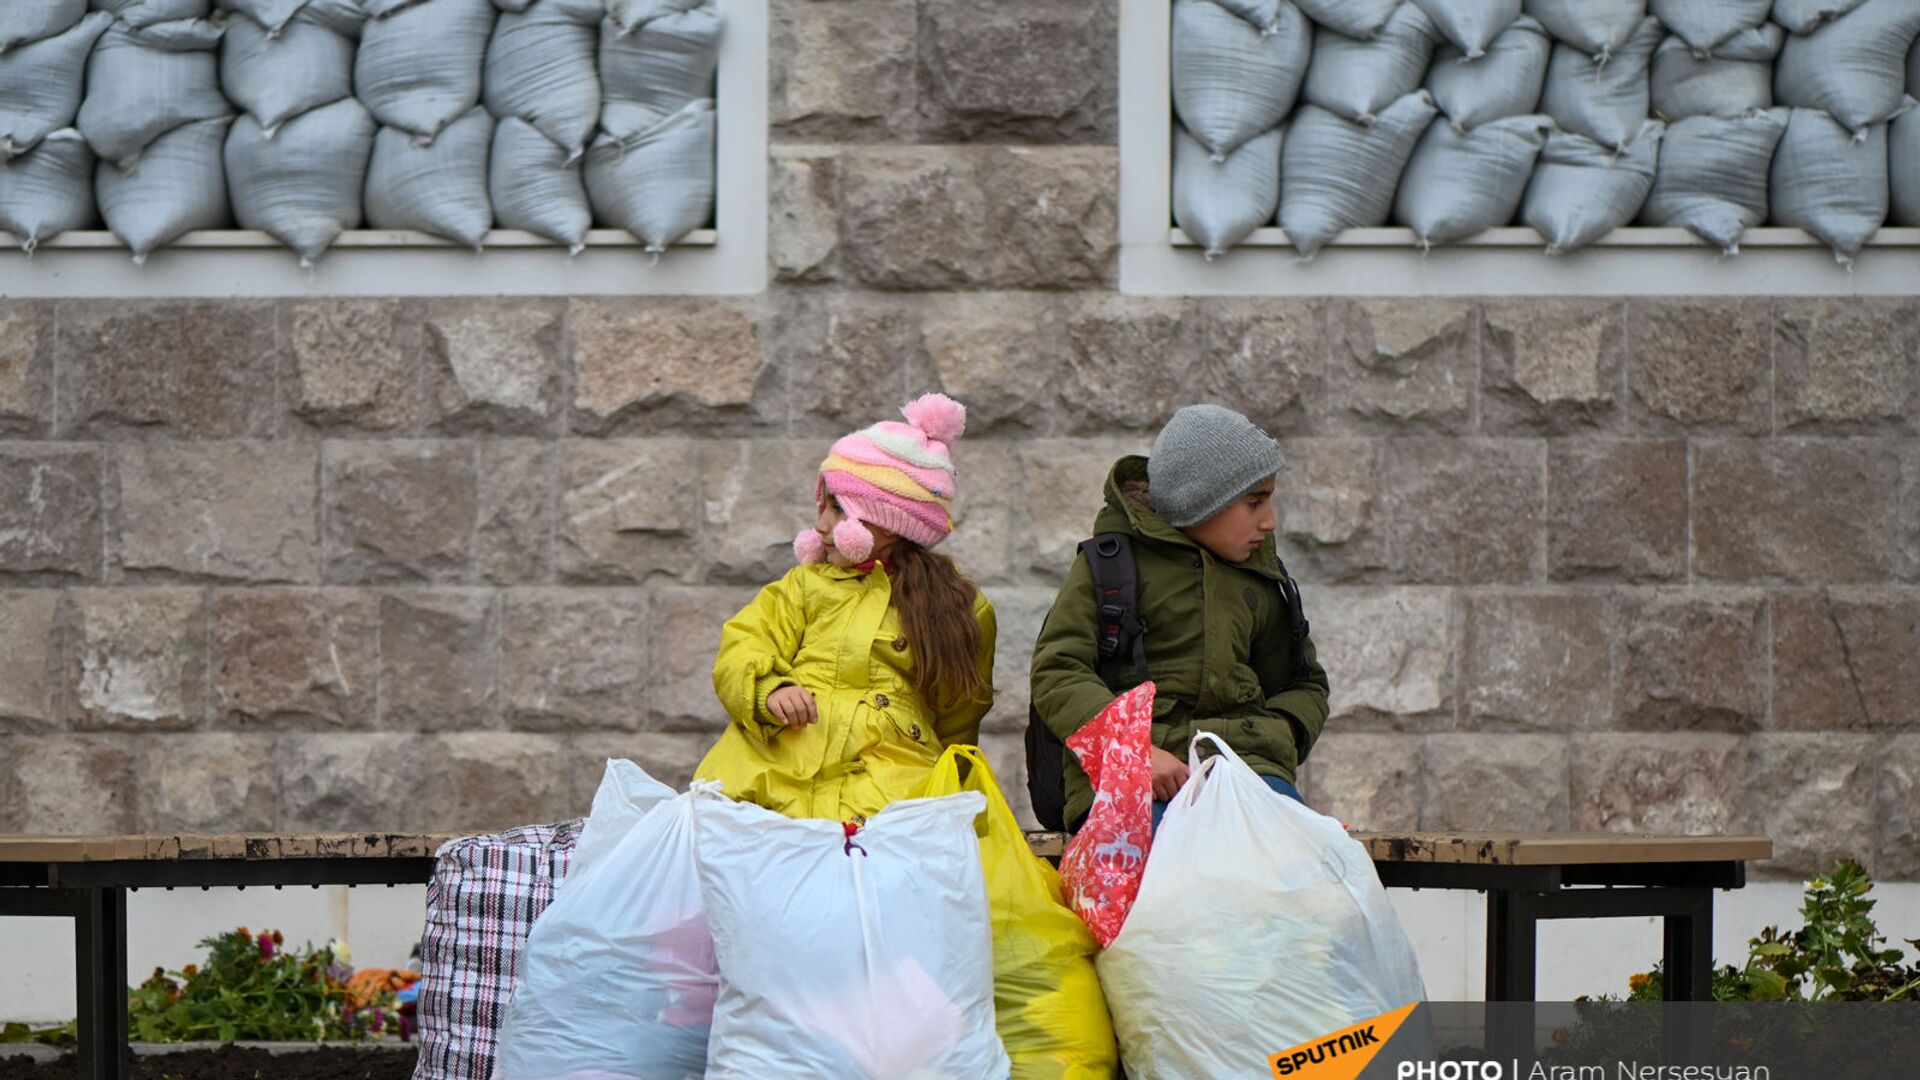 Дети из села Кирсаван ждут маму на площади в Степанакерте - Sputnik Արմենիա, 1920, 16.02.2021